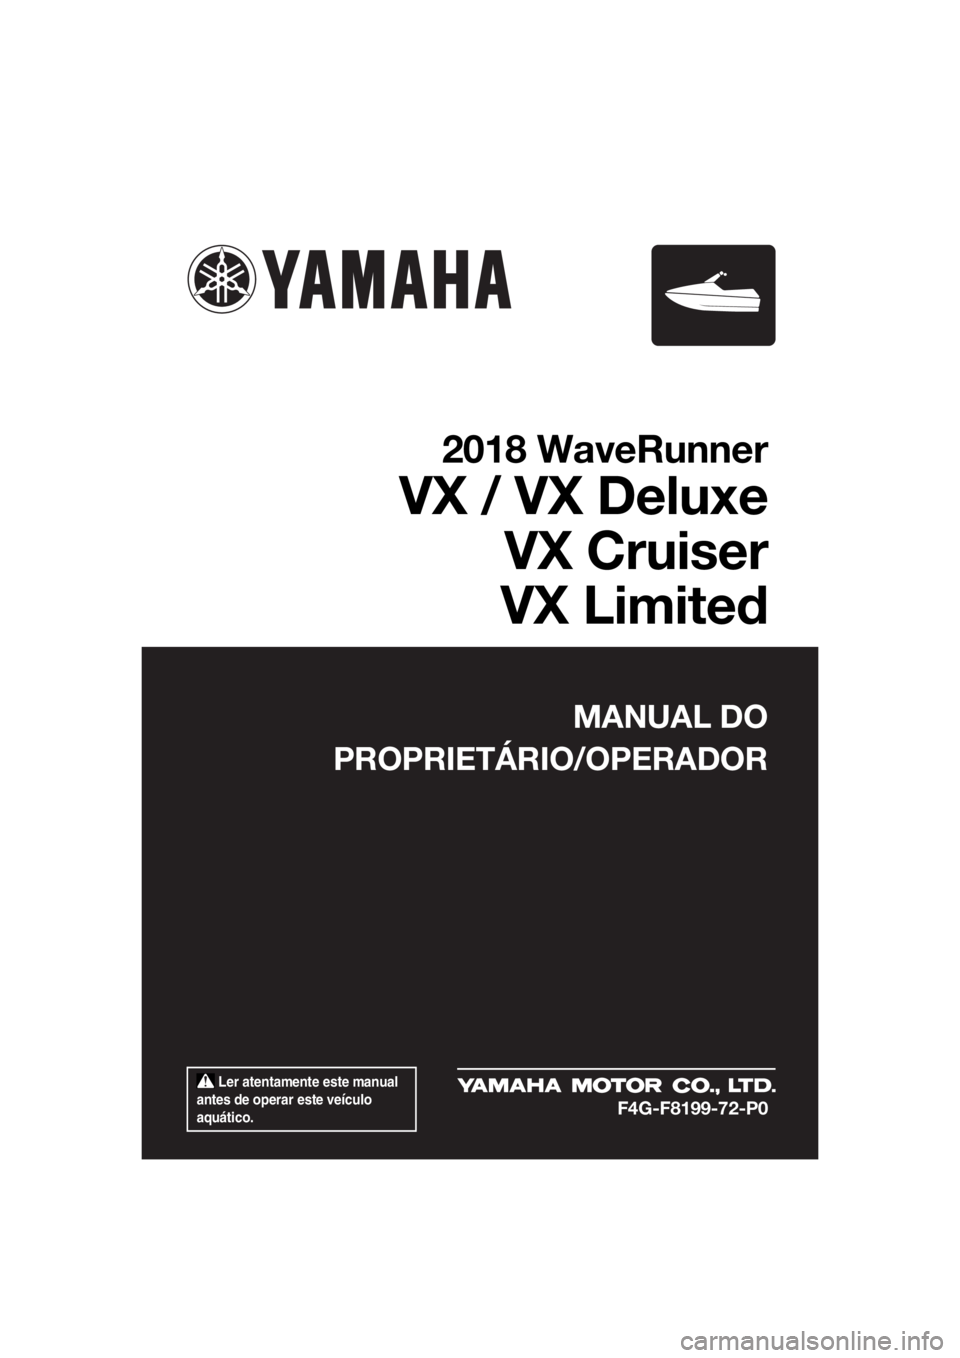 YAMAHA VX LIMITED 2018  Manual de utilização (in Portuguese)  Ler atentamente este manual 
antes de operar este veículo 
aquático.
MANUAL DO
PROPRIETÁRIO/OPERADOR
2018 WaveRunner
VX / VX Deluxe
VX Cruiser
VX Limited
F4G-F8199-72-P0
UF4G72P0.book  Page 1  Mon